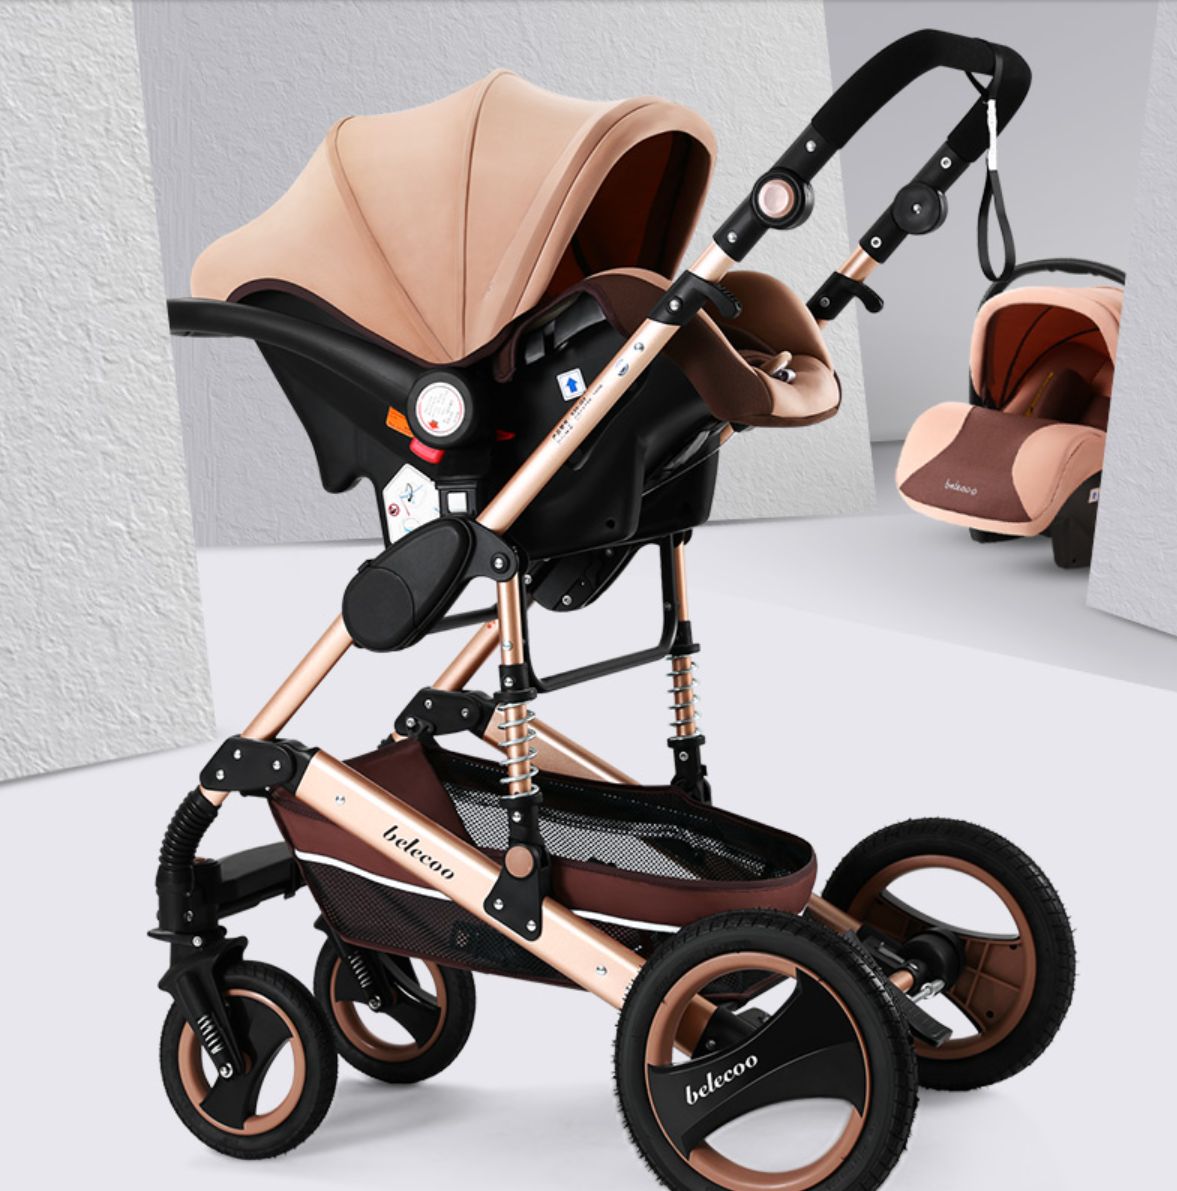 belecoo婴儿提篮式安全座椅宝宝新生儿汽车用便携提篮式车载摇篮详情图9